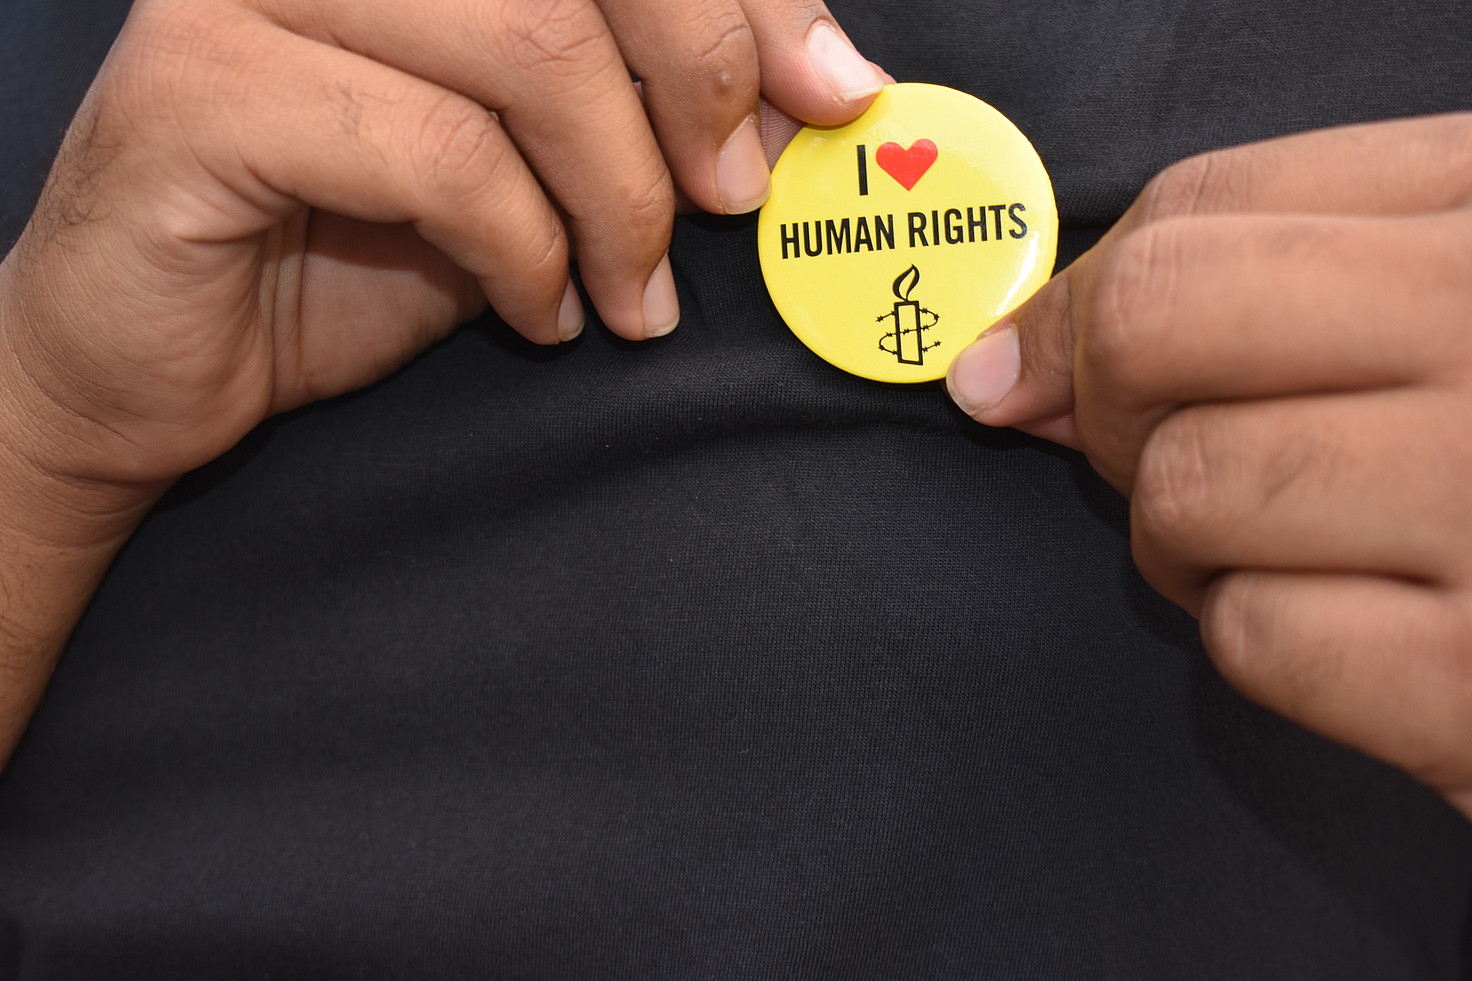 Manos sosteniendo una chapa en la que pone 'I love human rights'